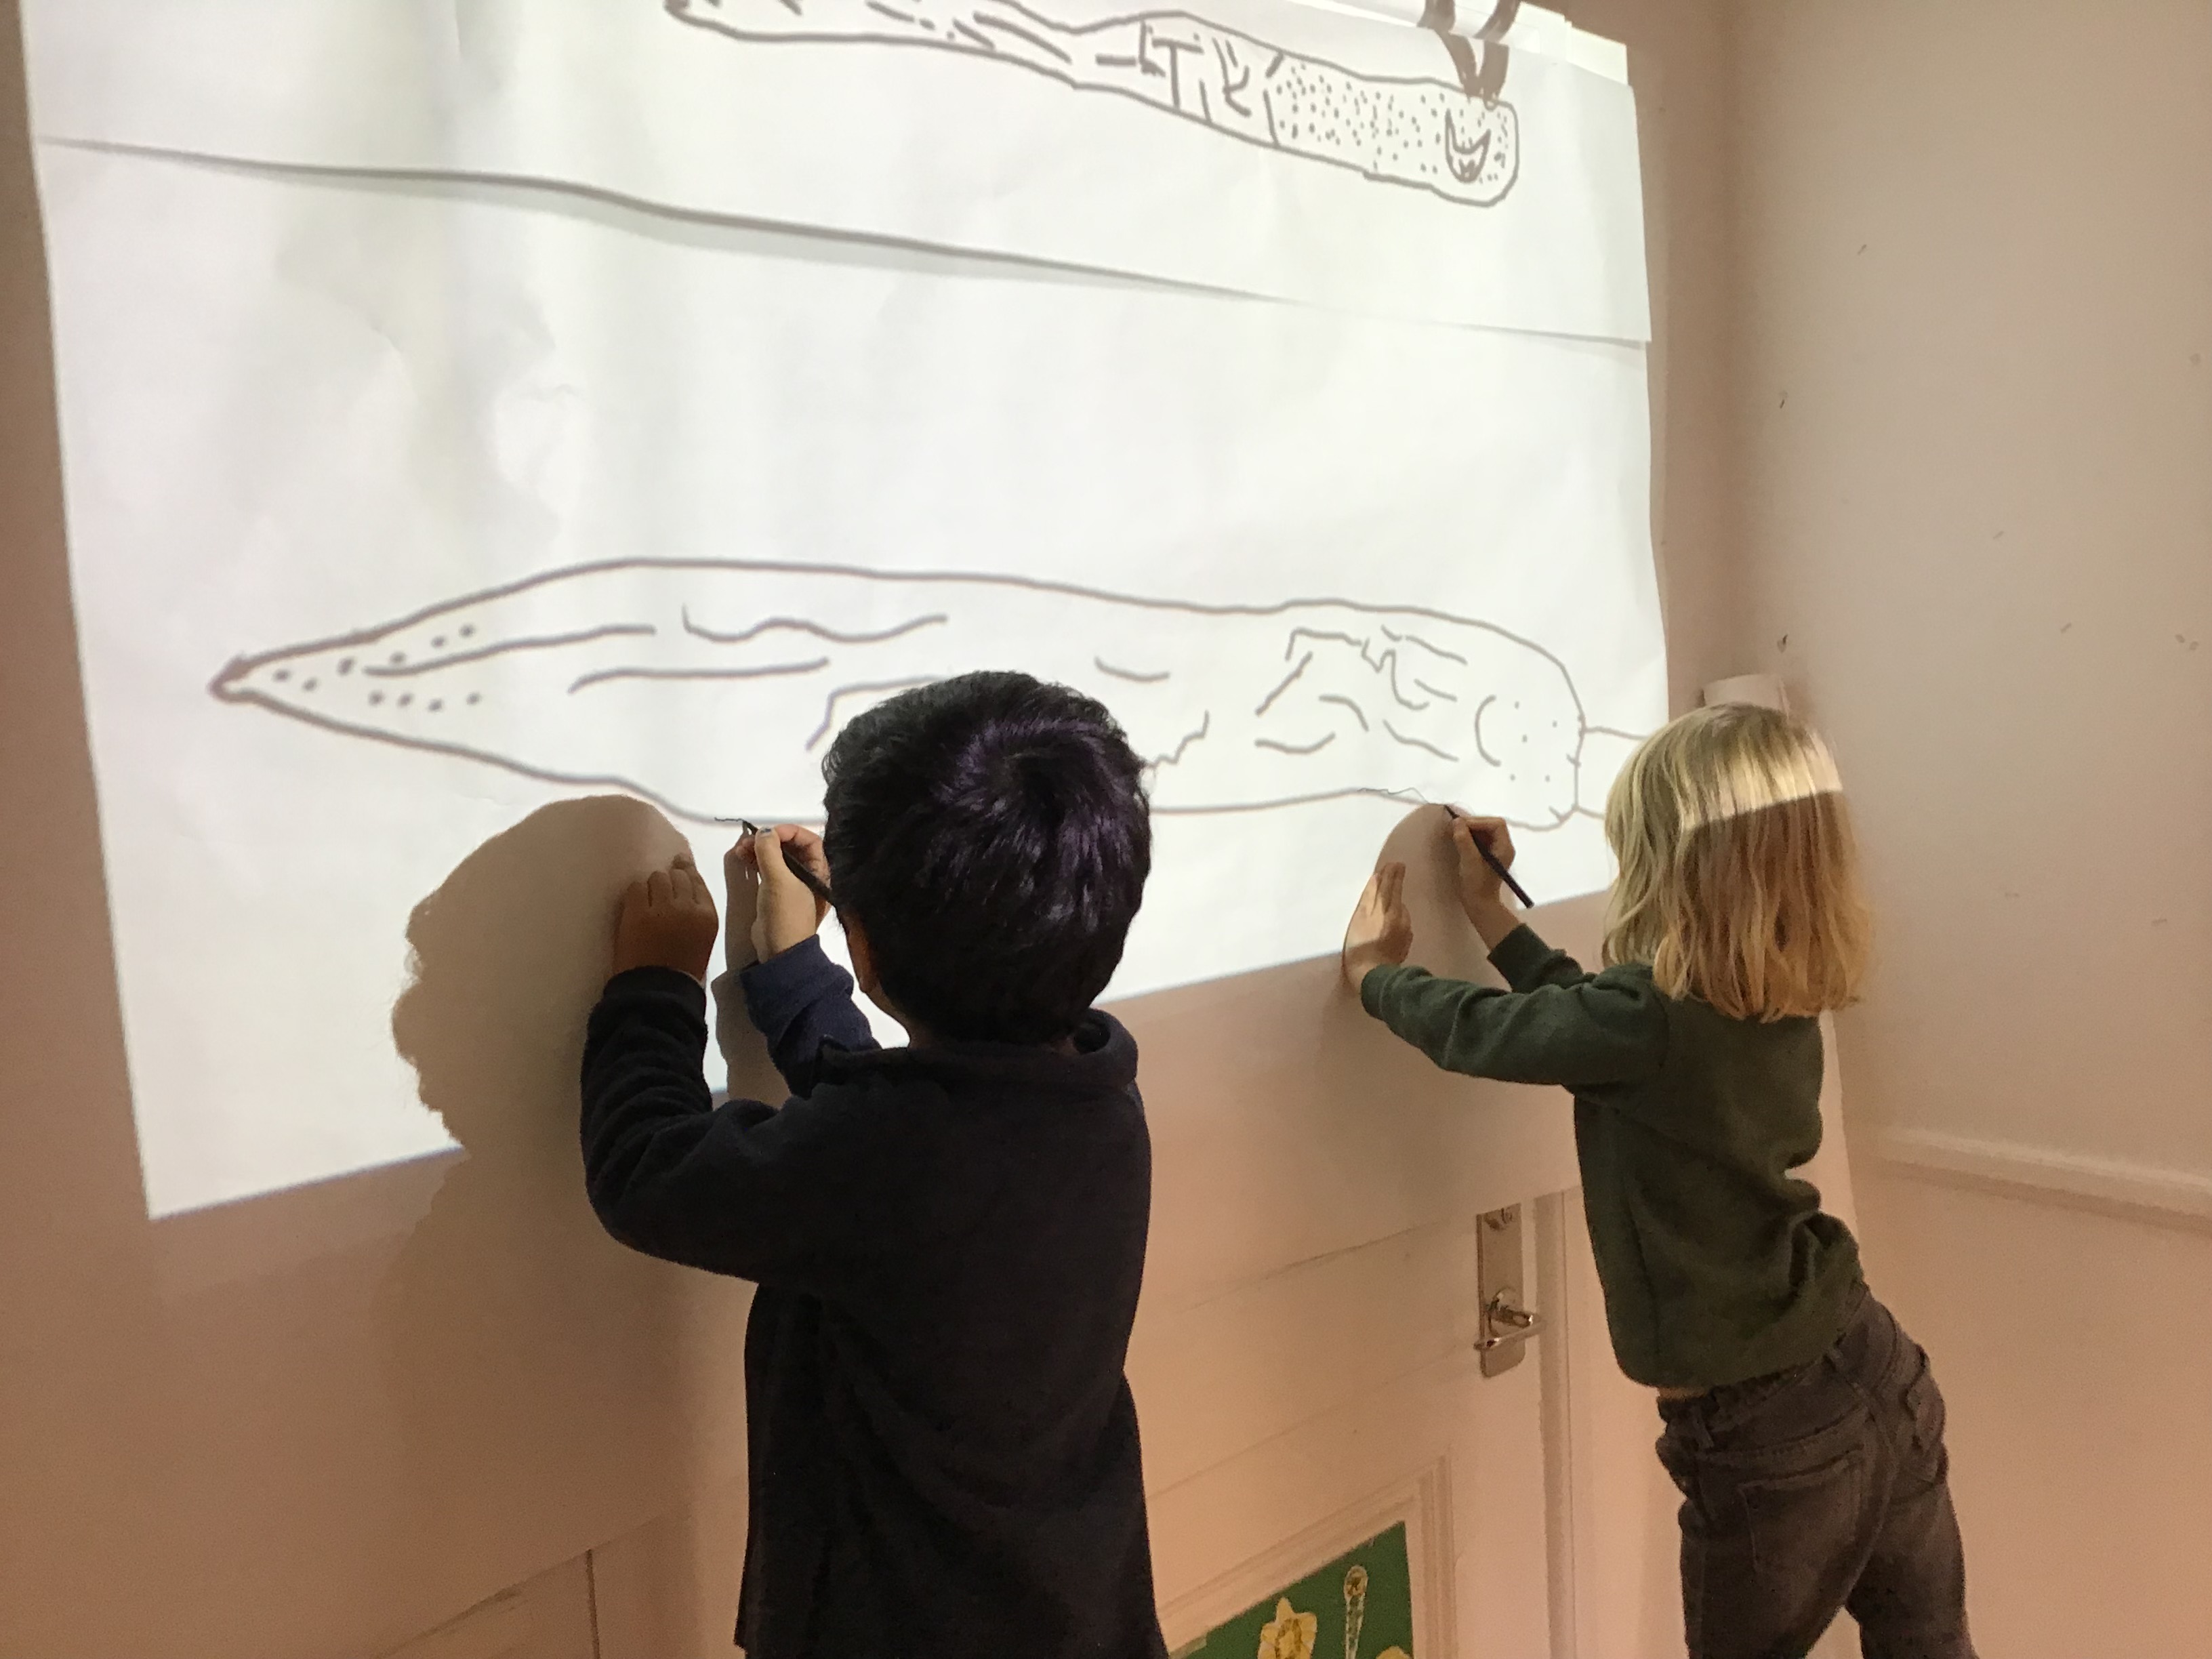 Två barn målar av en bild som projiceras på väggen